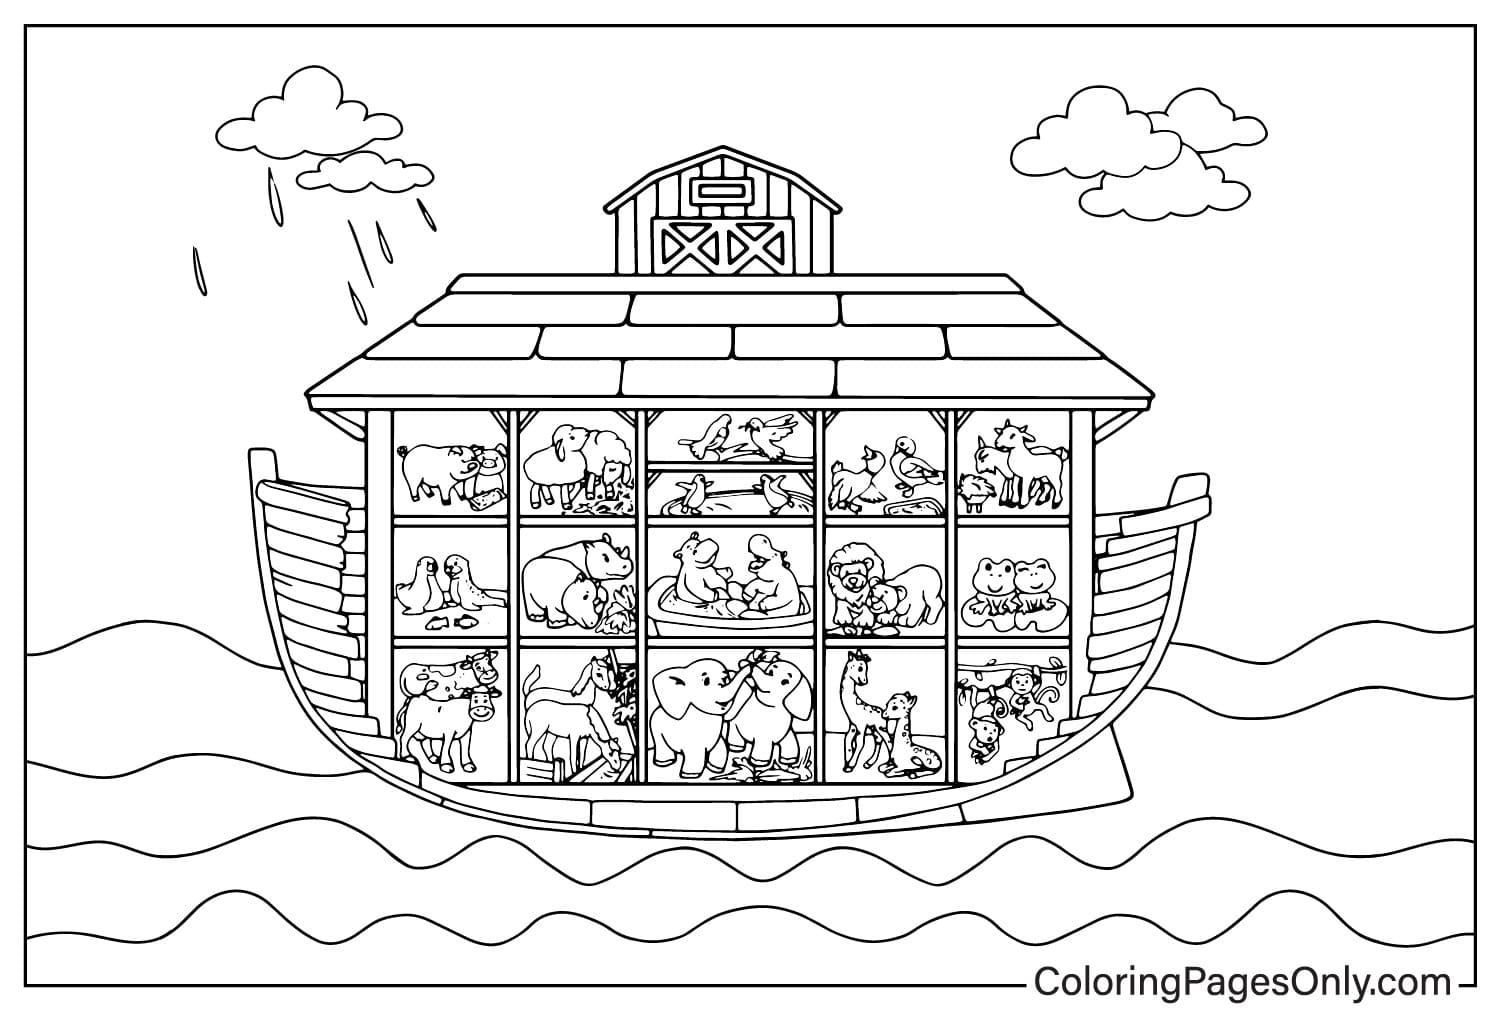 Imágenes del Arca de Noé para colorear de El Arca de Noé